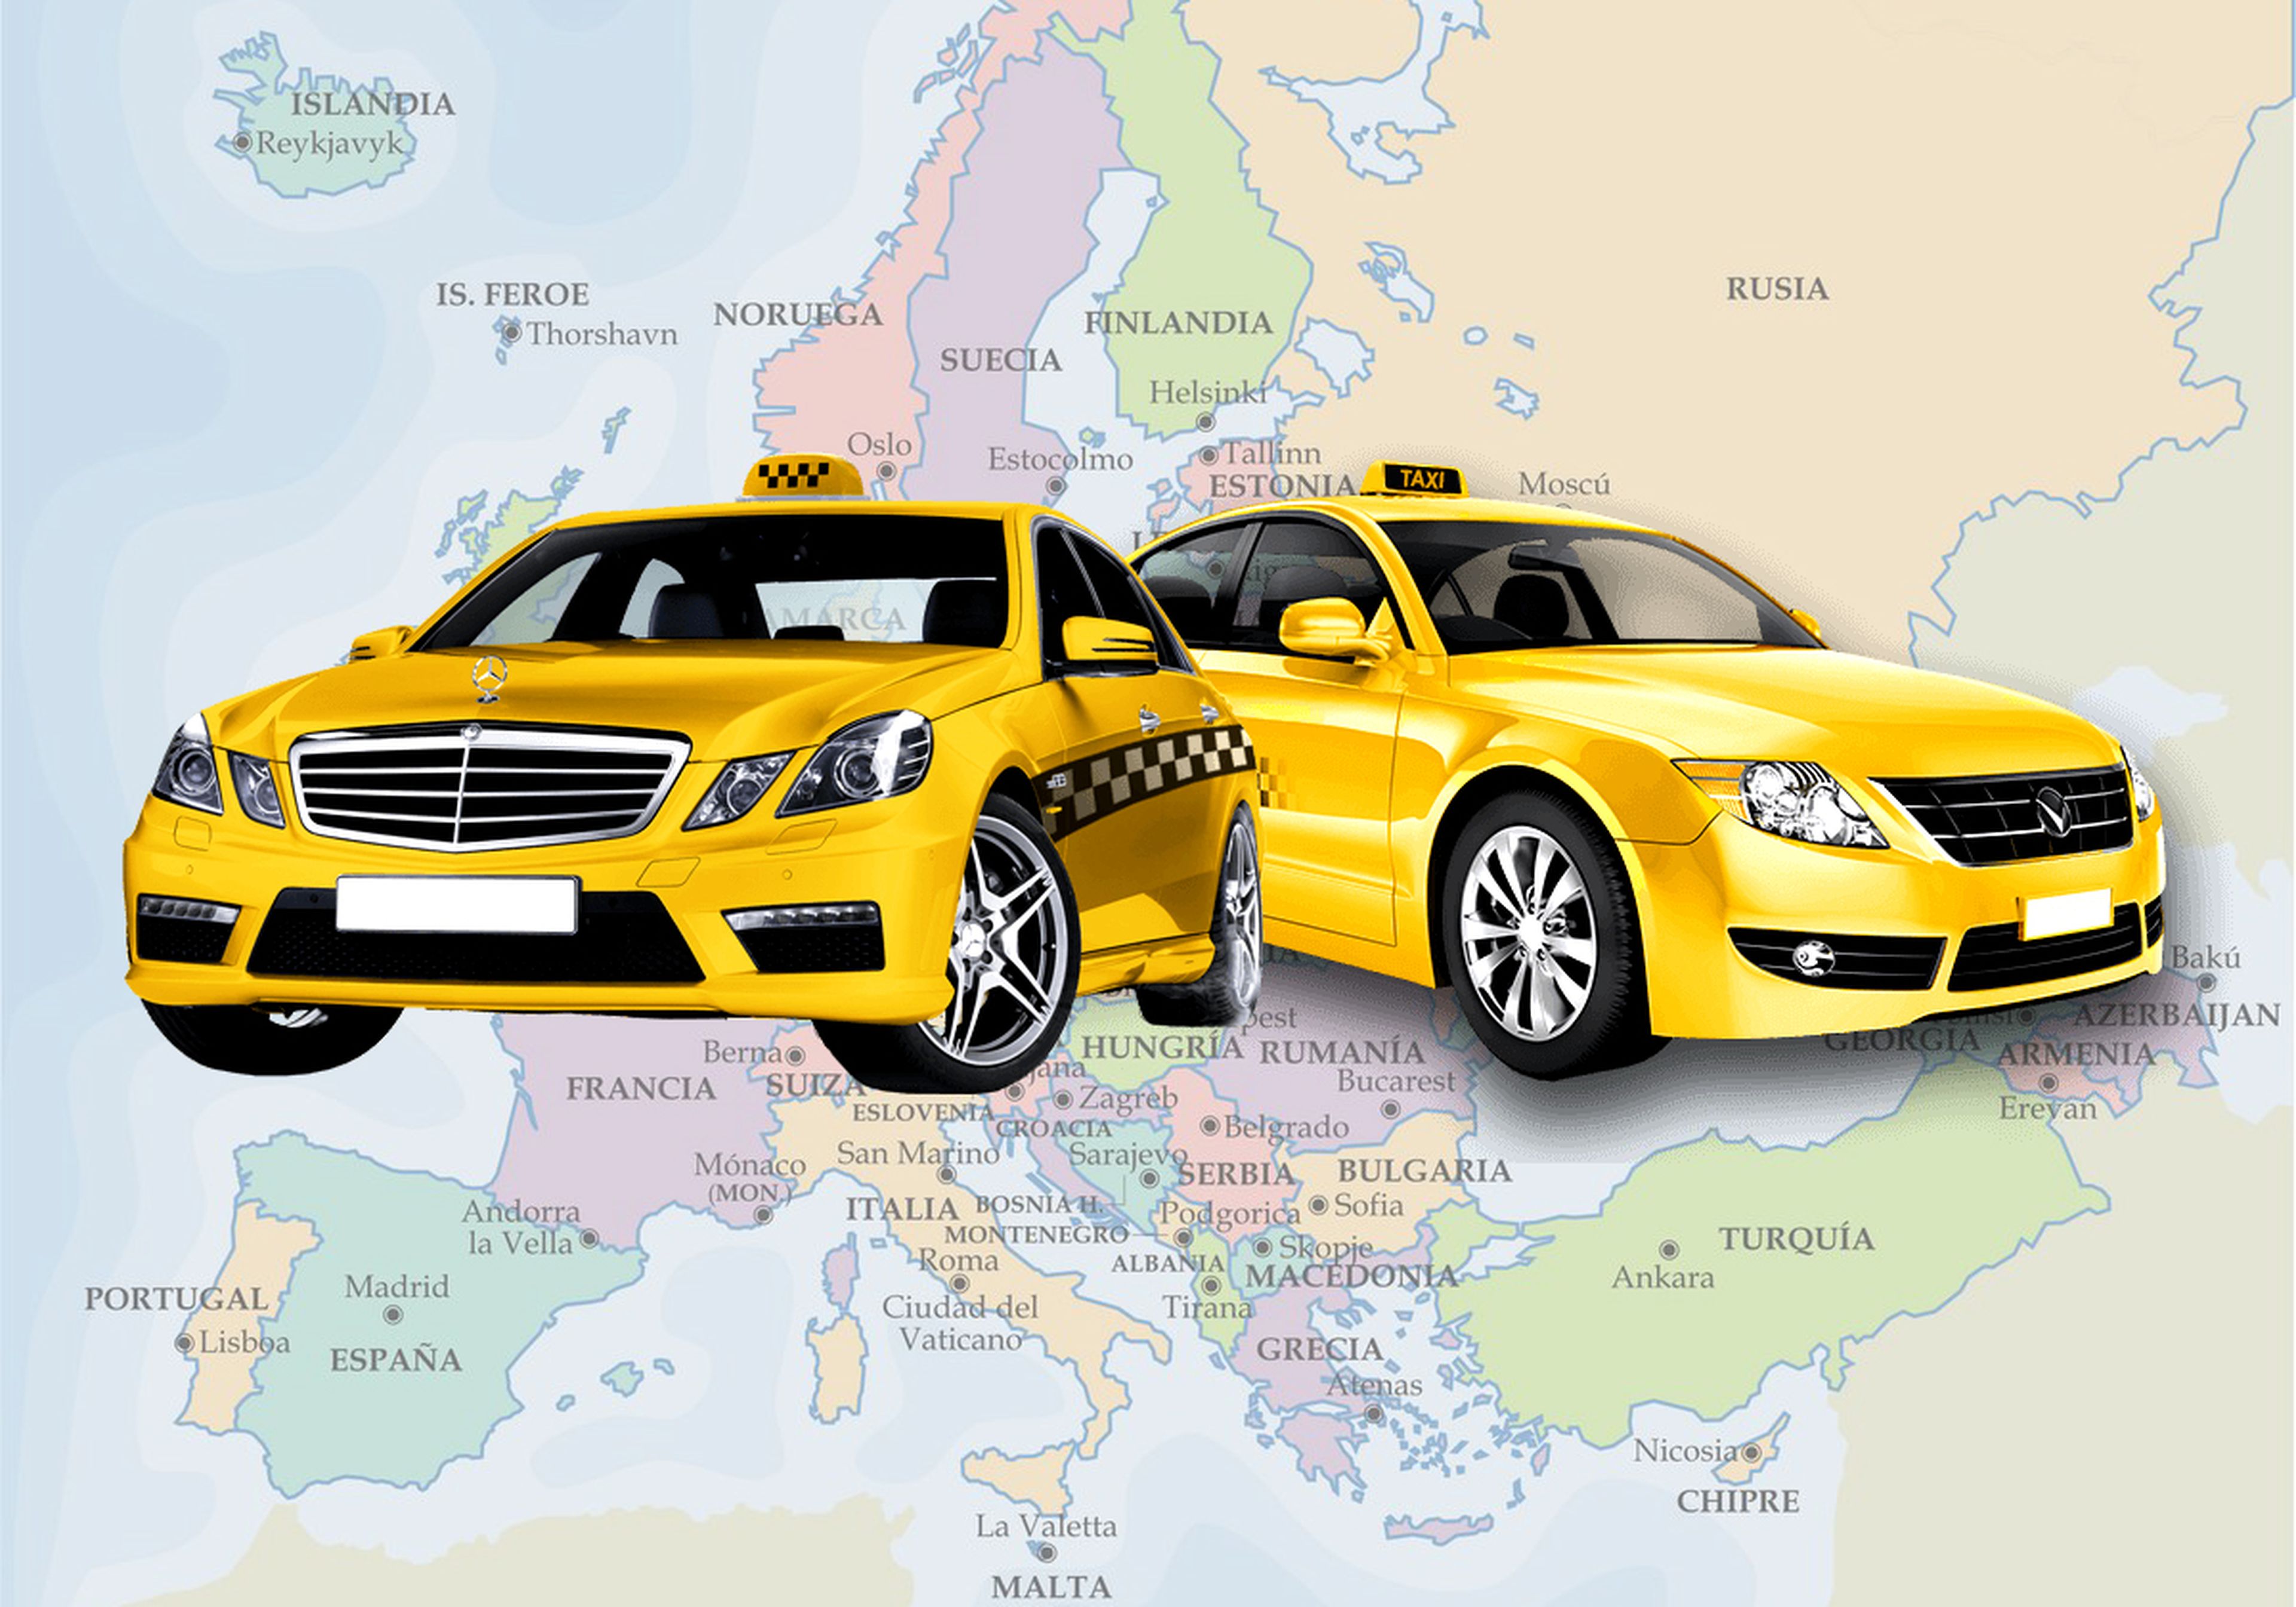 Las ciudades españolas que destacan en Europa por tener los usuarios de taxi más olvidadizos según la DGT